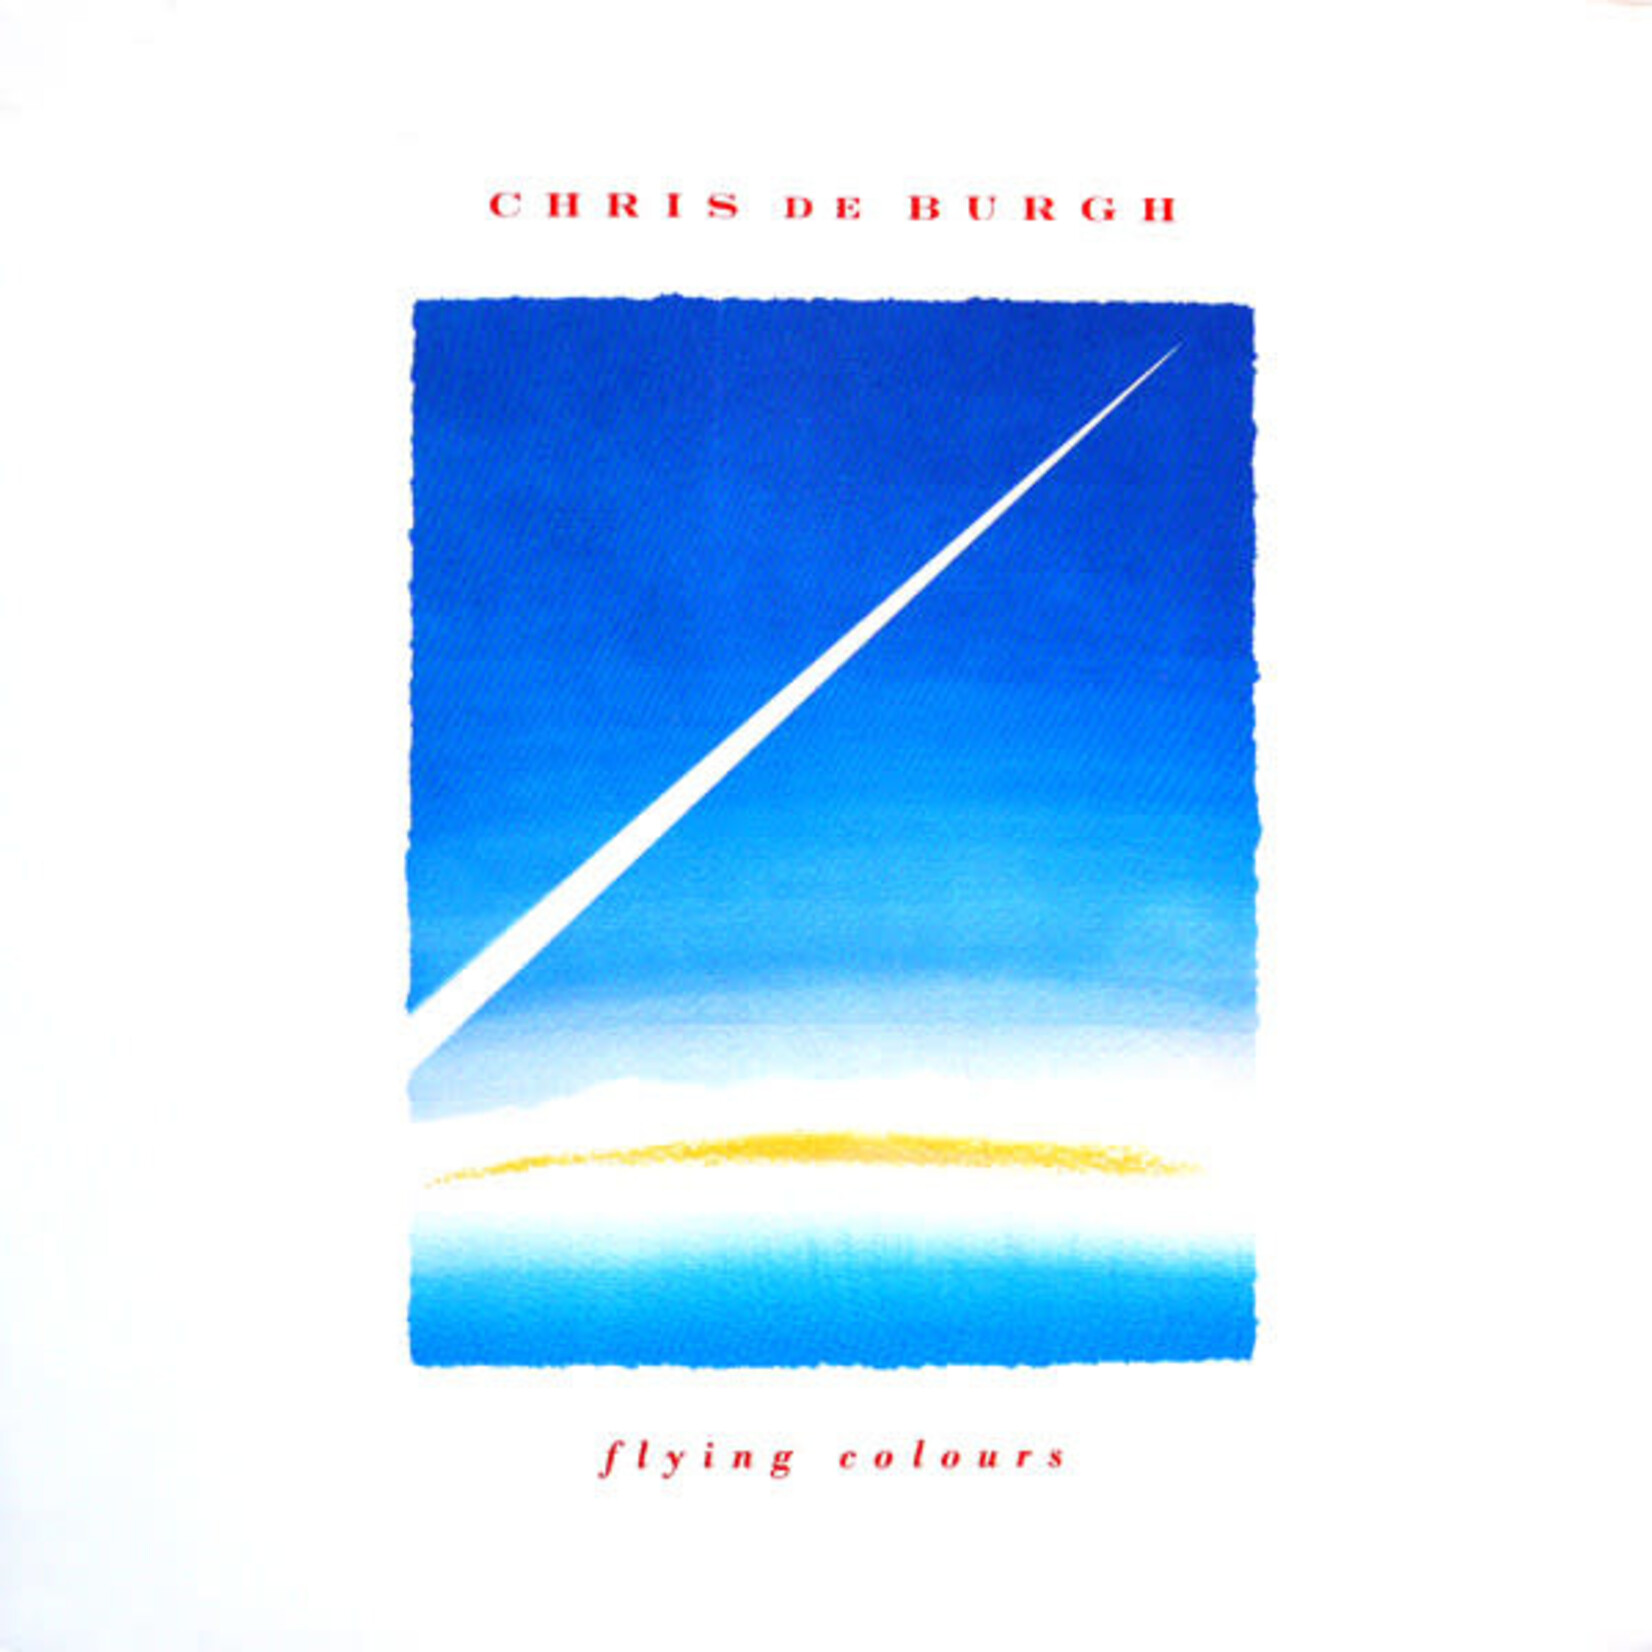 Chris de Burgh – Flying Colours LP